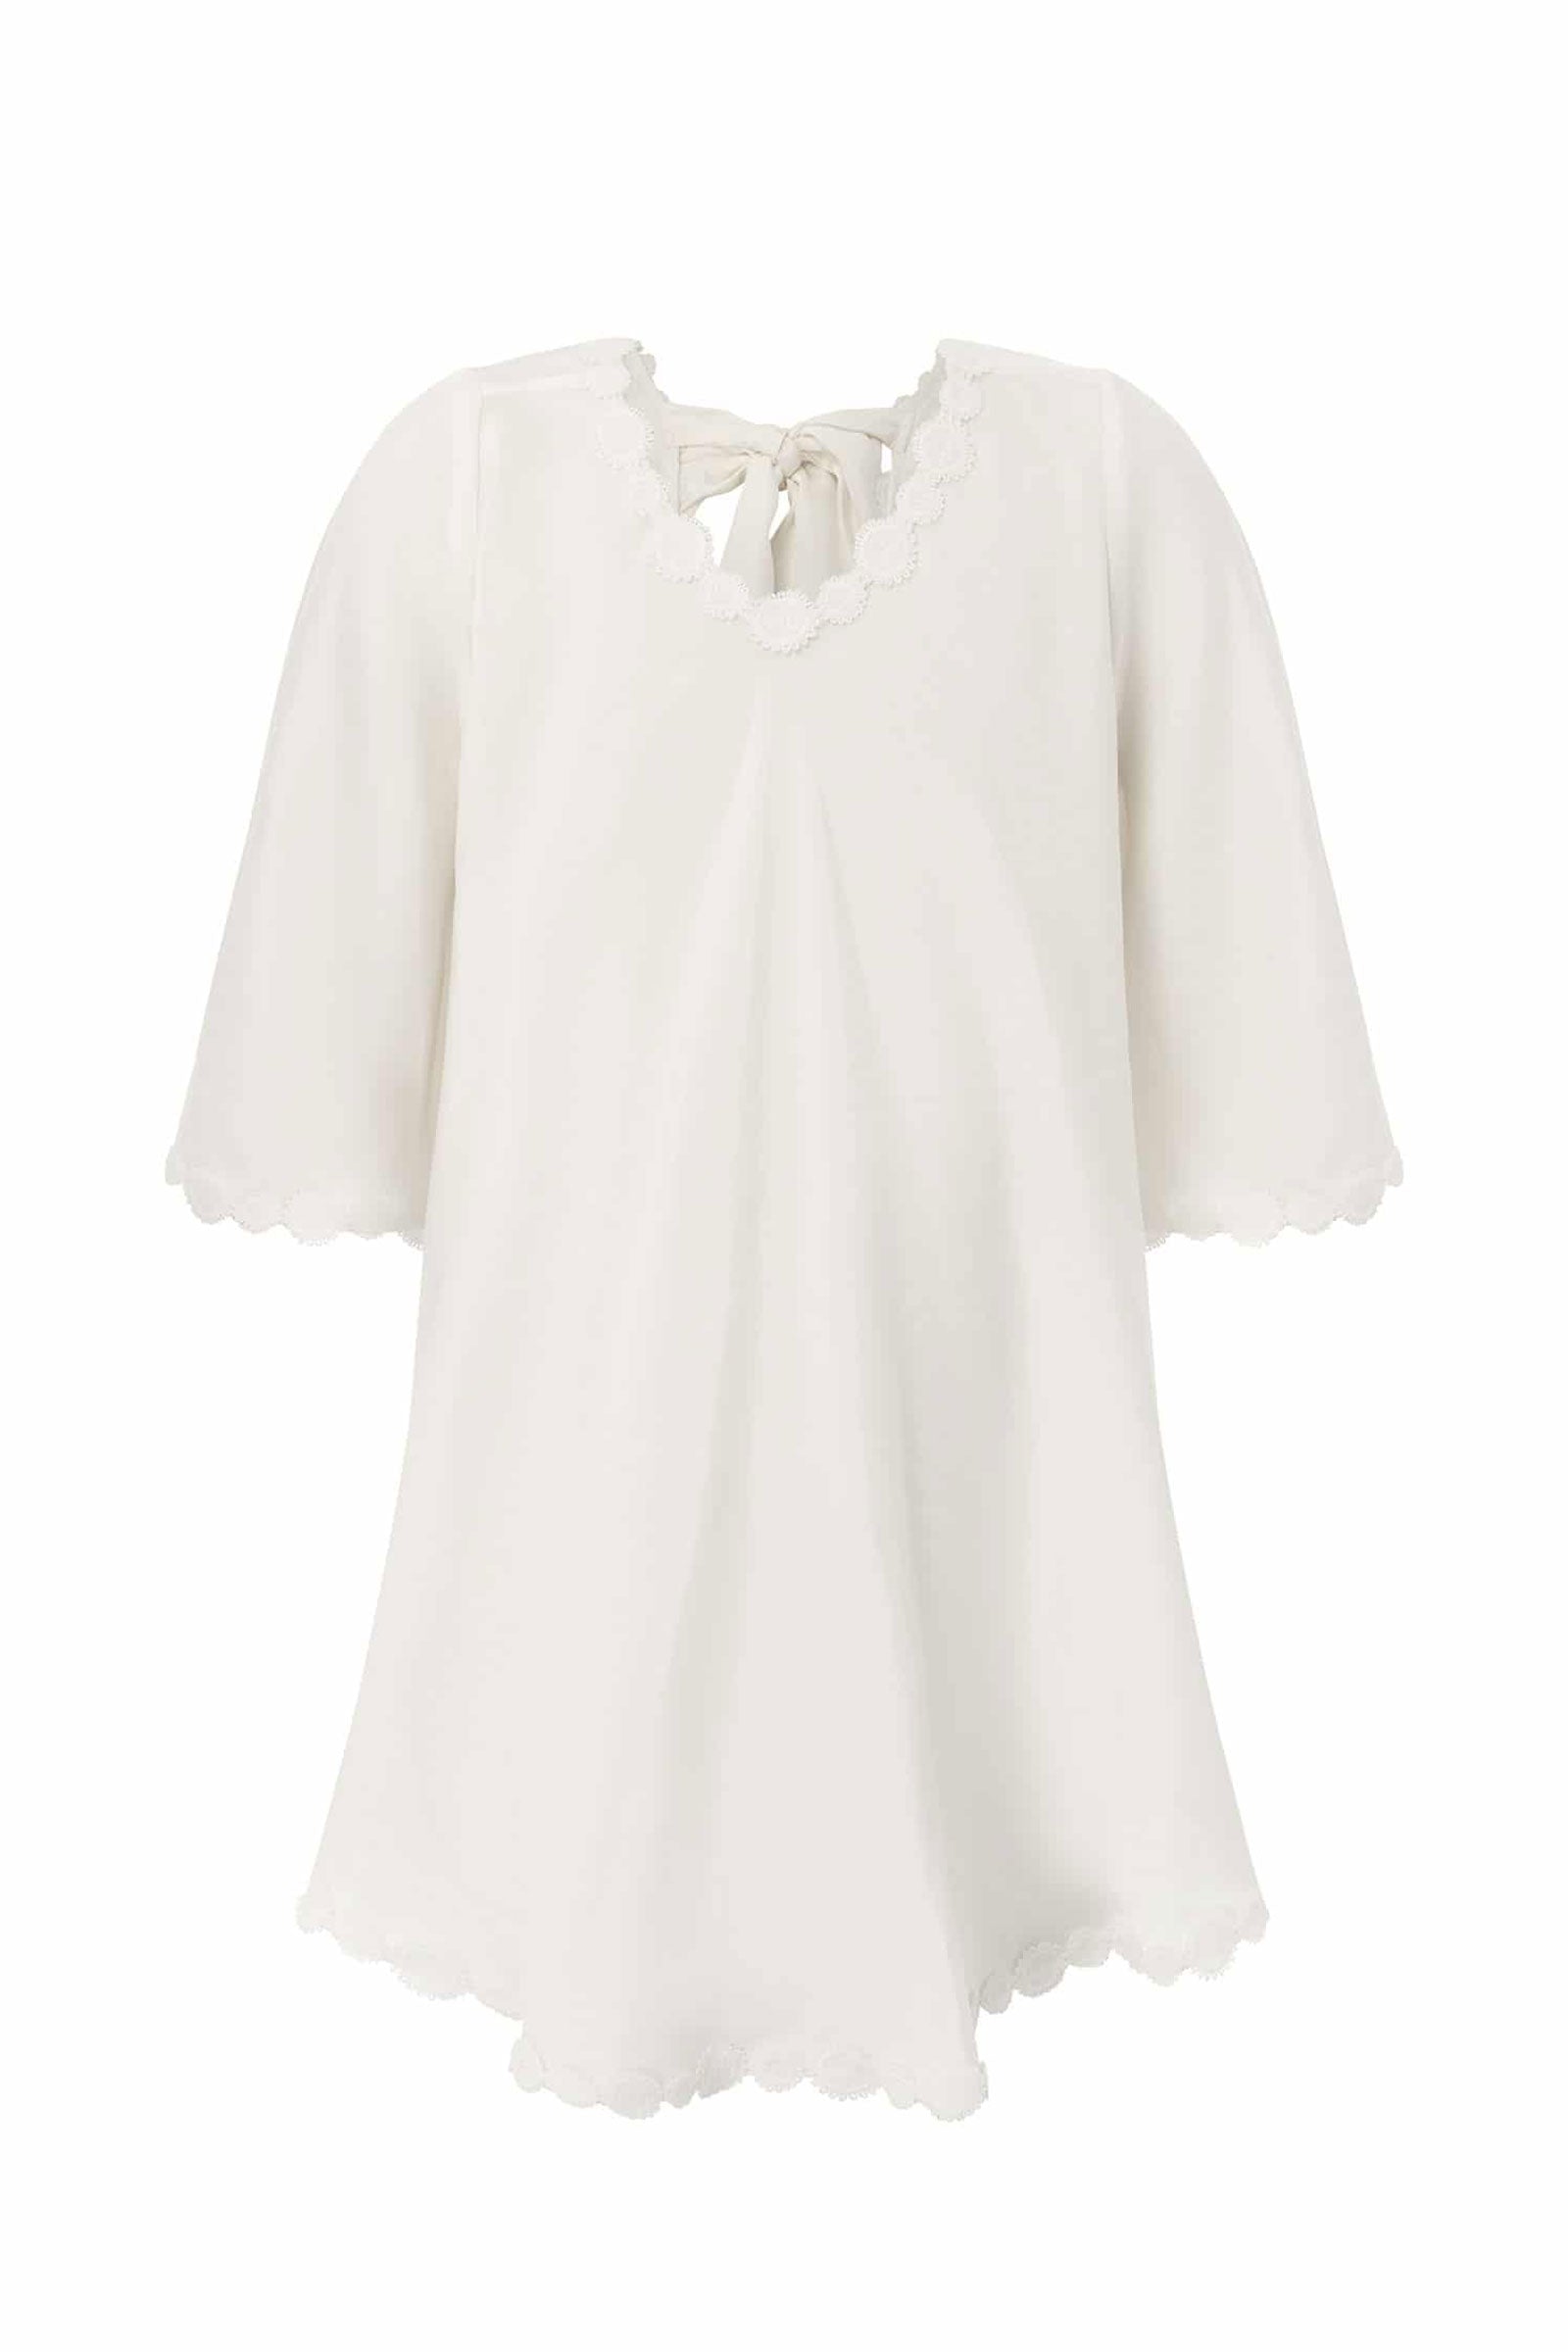 Mini Silk Sunflower Dress | Flower Girl & Occasionwear – Grace Loves ...